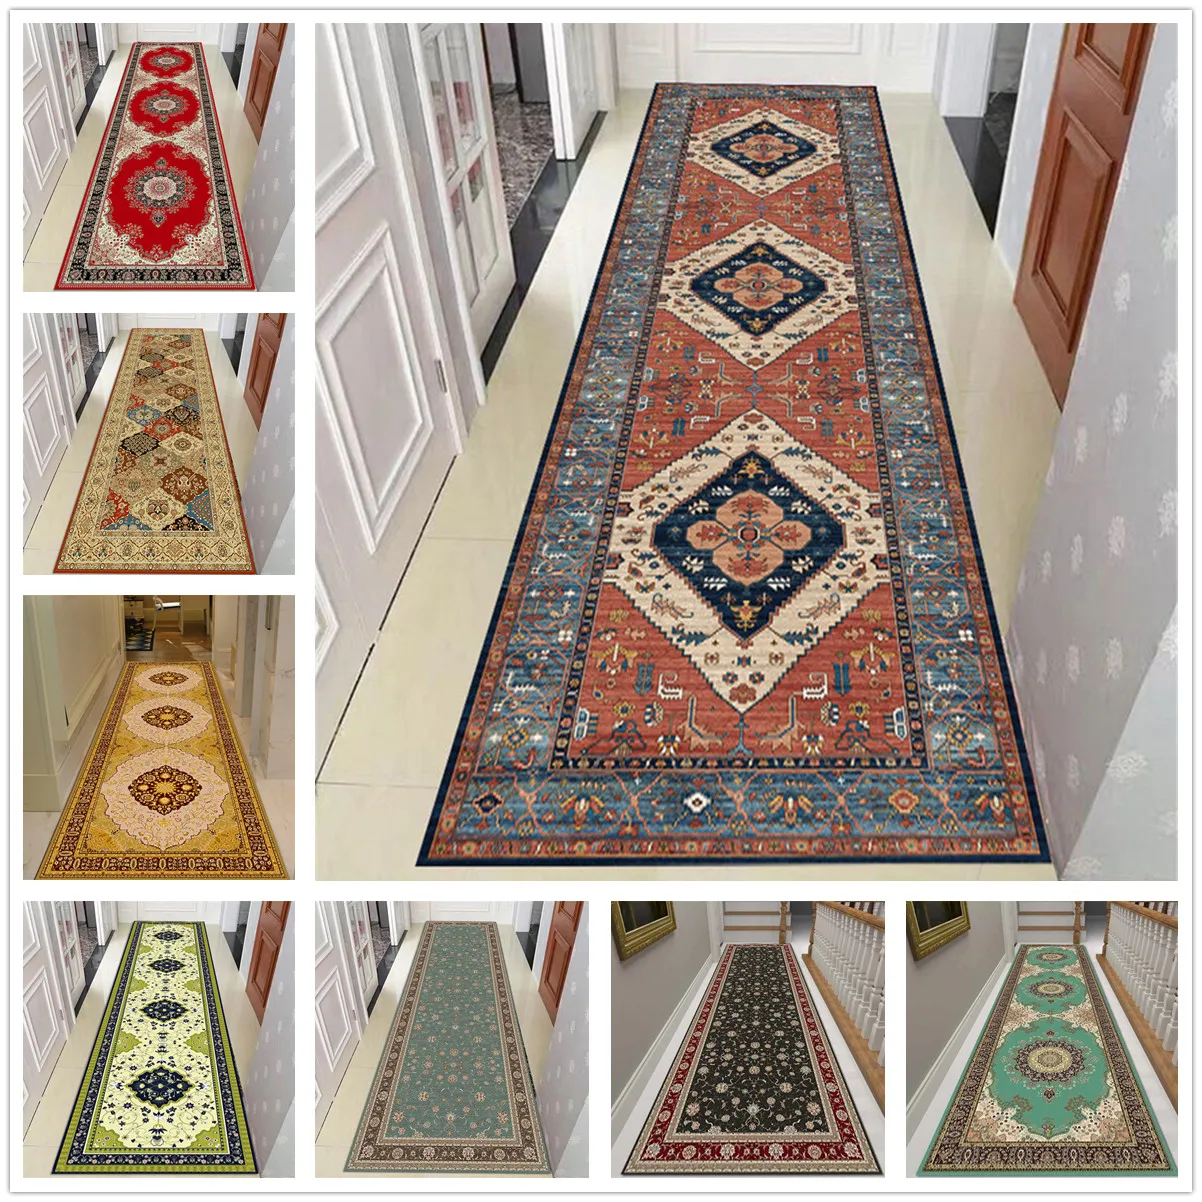 

Moroccan Style Living Room Rug Persian Long Corridor Carpet Hallway Kitchen Bedroom Mat Flannel Non-slip Floor Area Rug Doormat